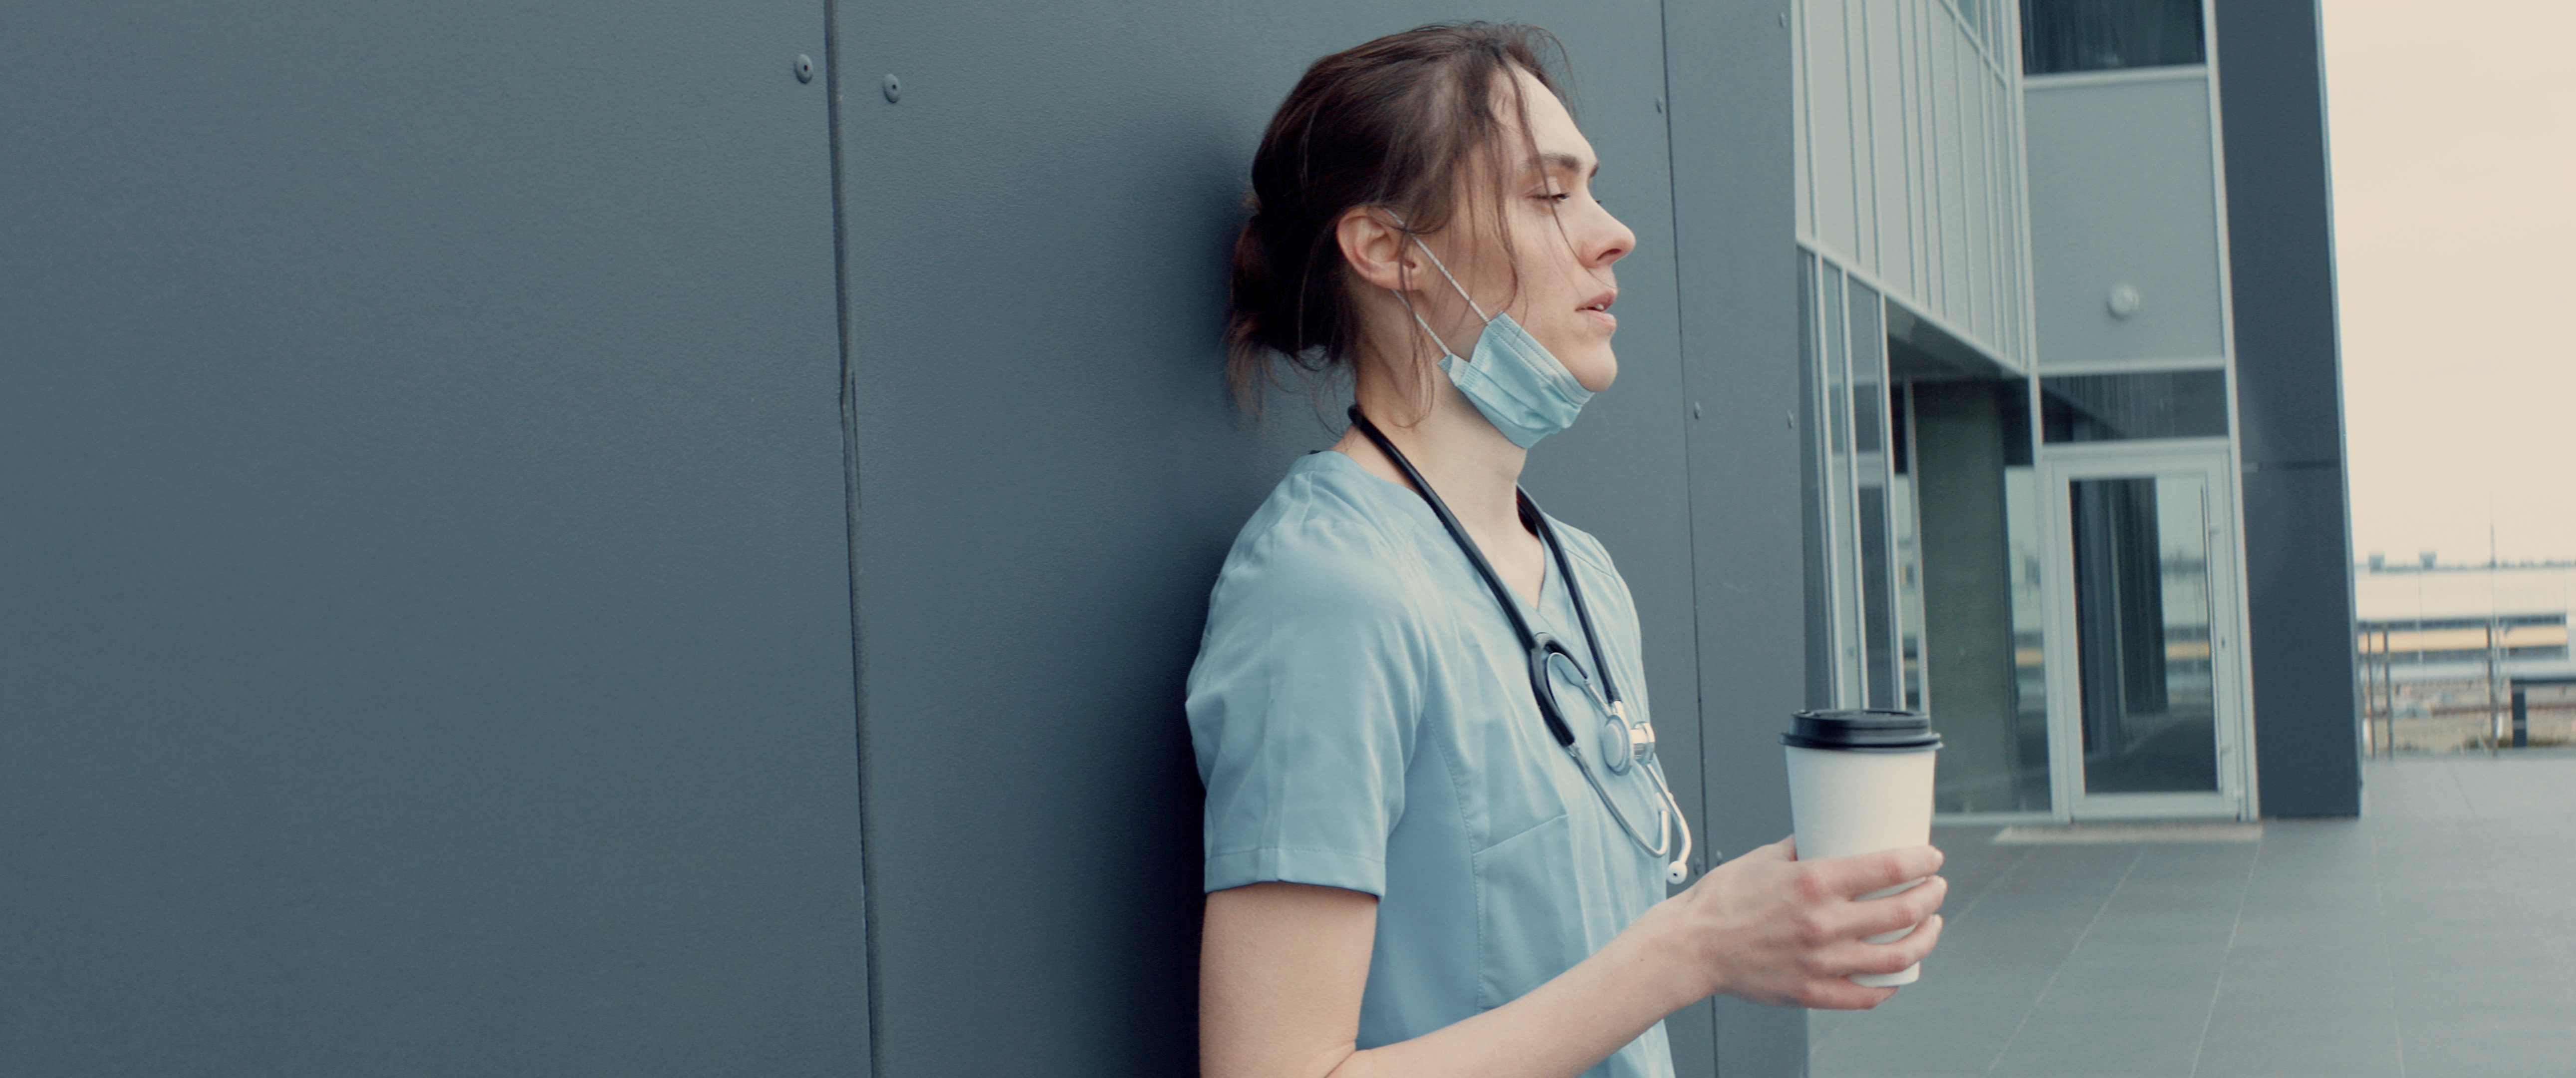 A tired nurse outside taking break | Source: Shutterstock